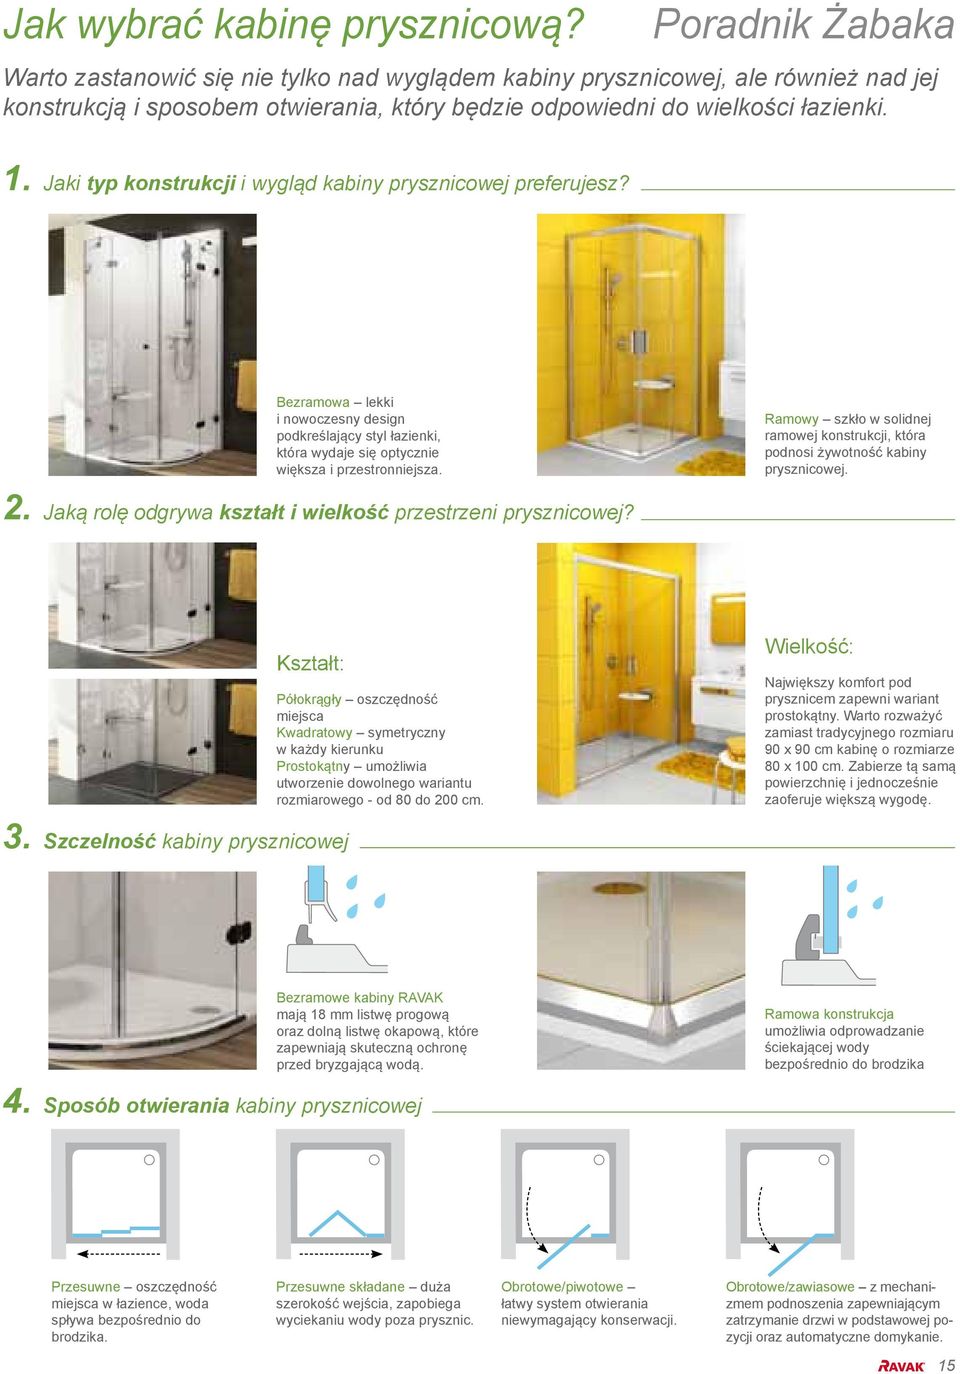 Jaki typ konstrukcji i wygląd kabiny prysznicowej preferujesz? Bezramowa lekki i nowoczesny design podkreślający styl łazienki, która wydaje się optycznie większa i przestronniejsza.